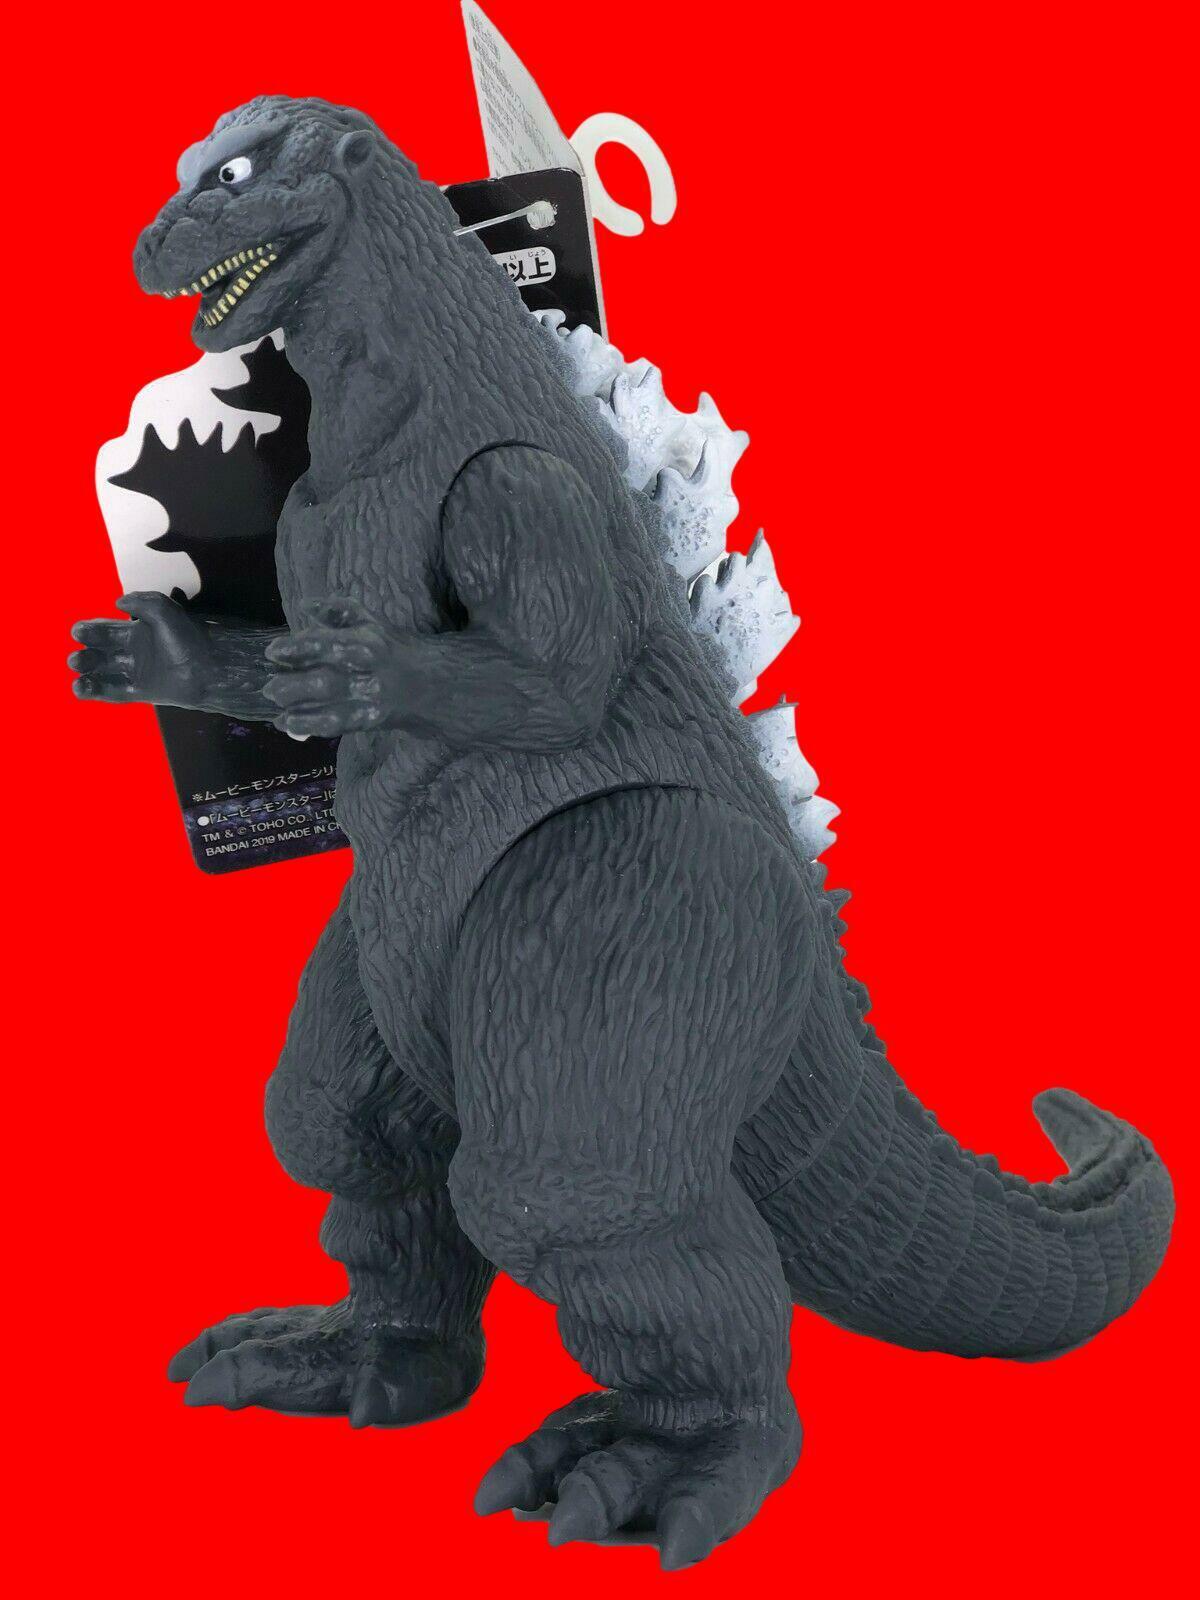 Bandai Godzilla 2019 Movie Monster Series Godzilla 1954 Figure 155mm 6.10inch